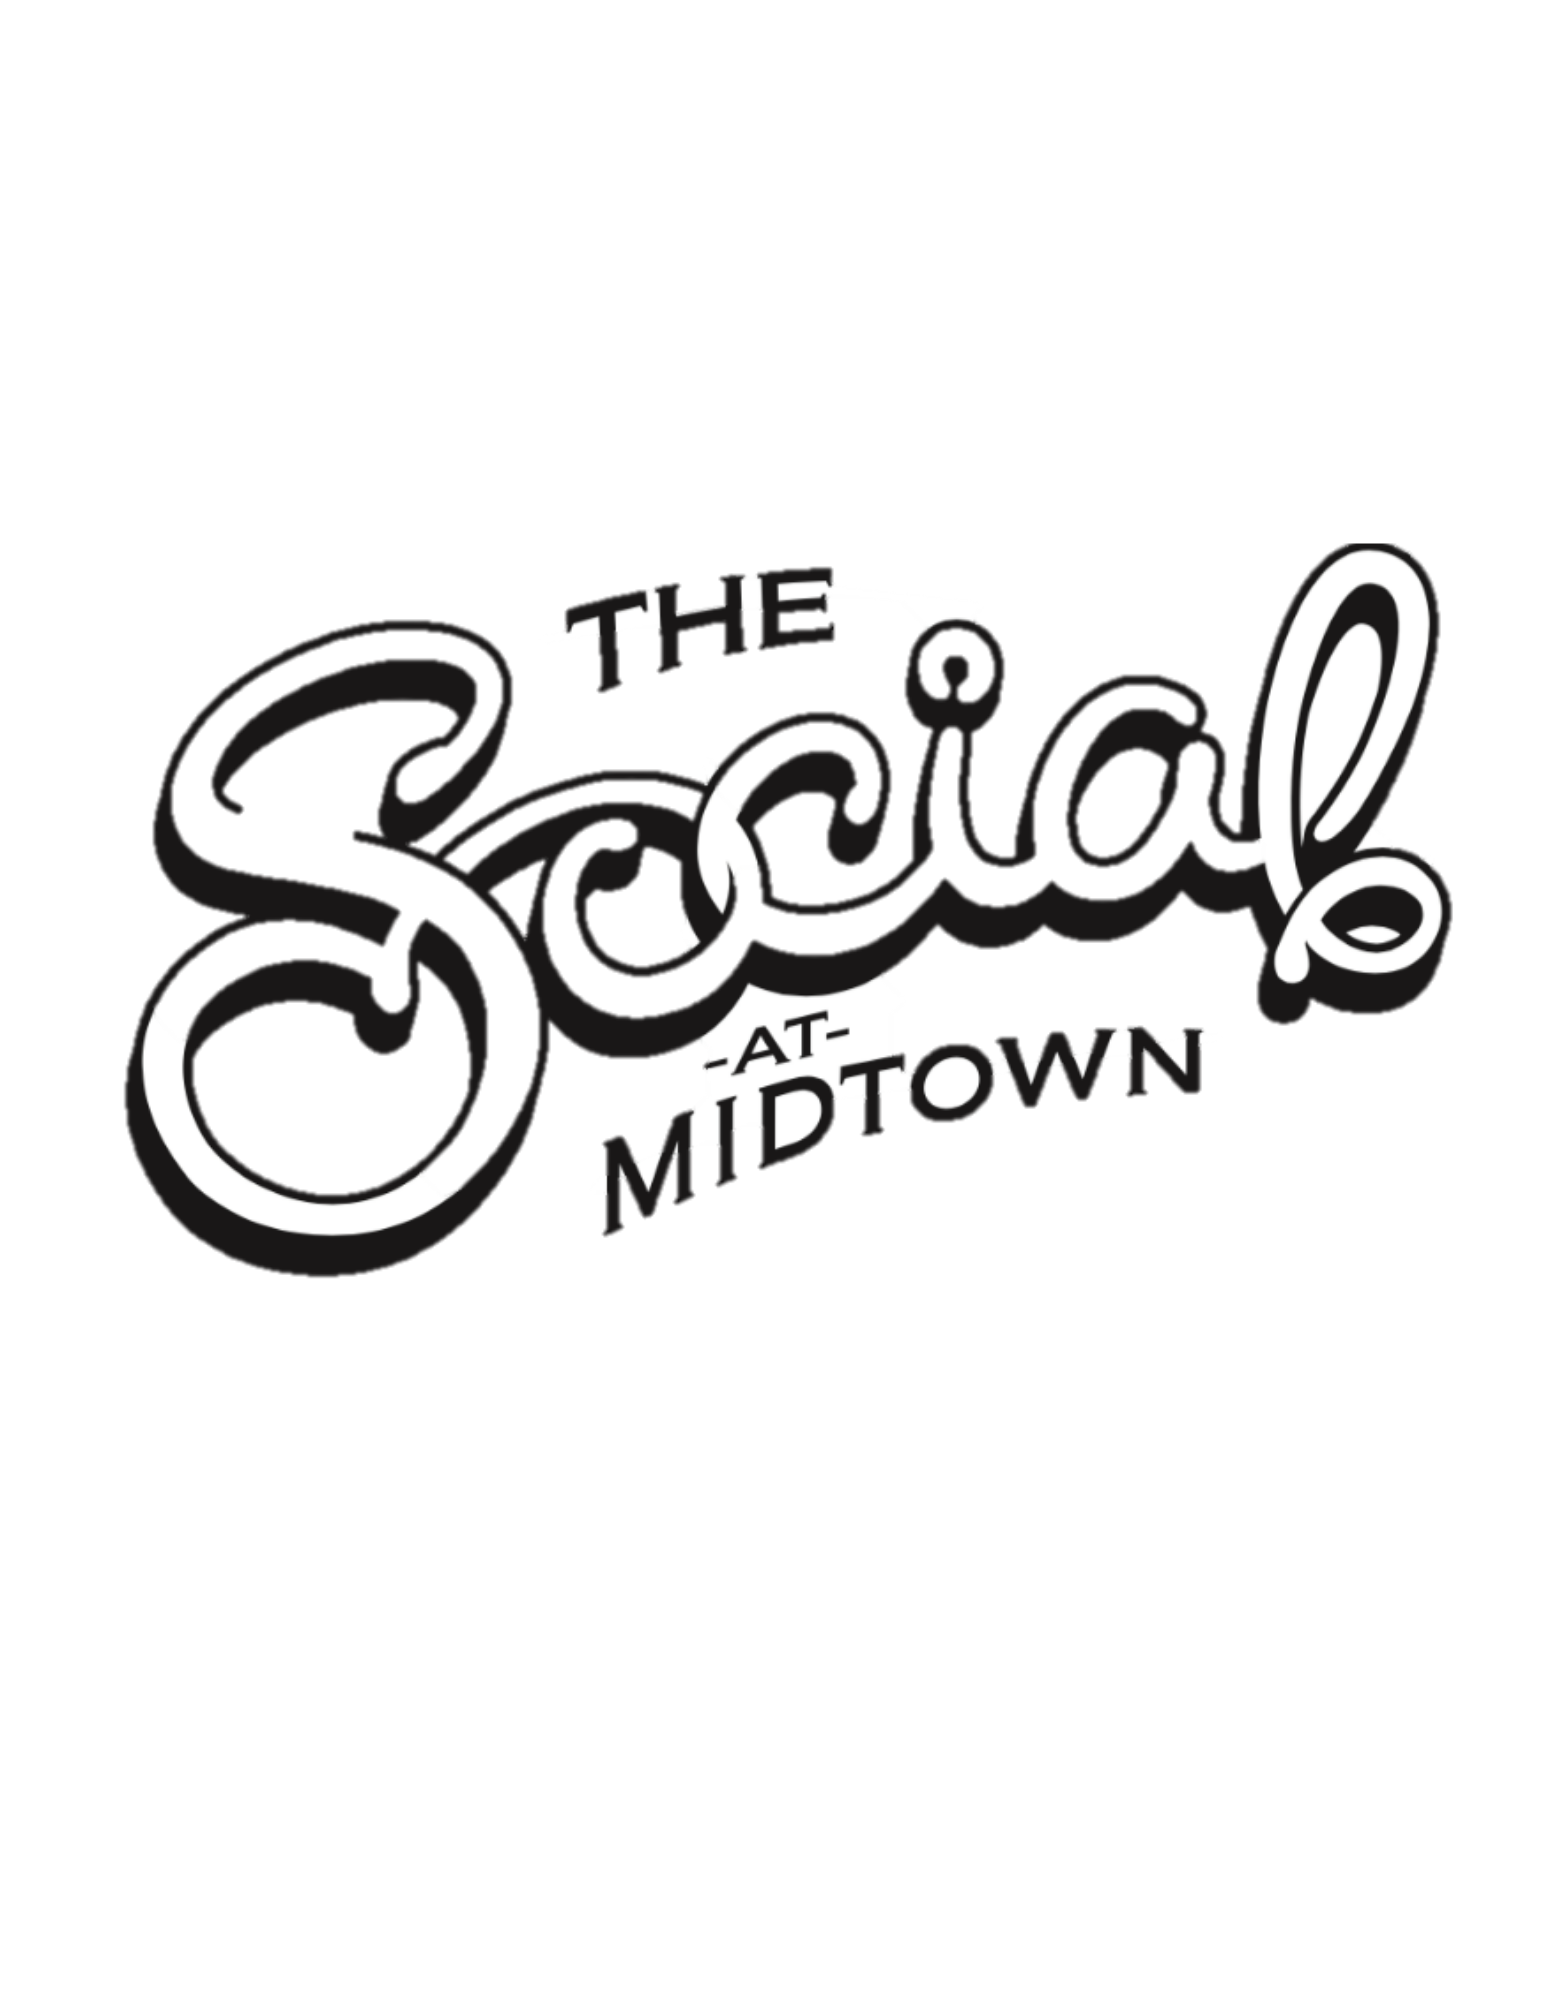 The Social at Midtown